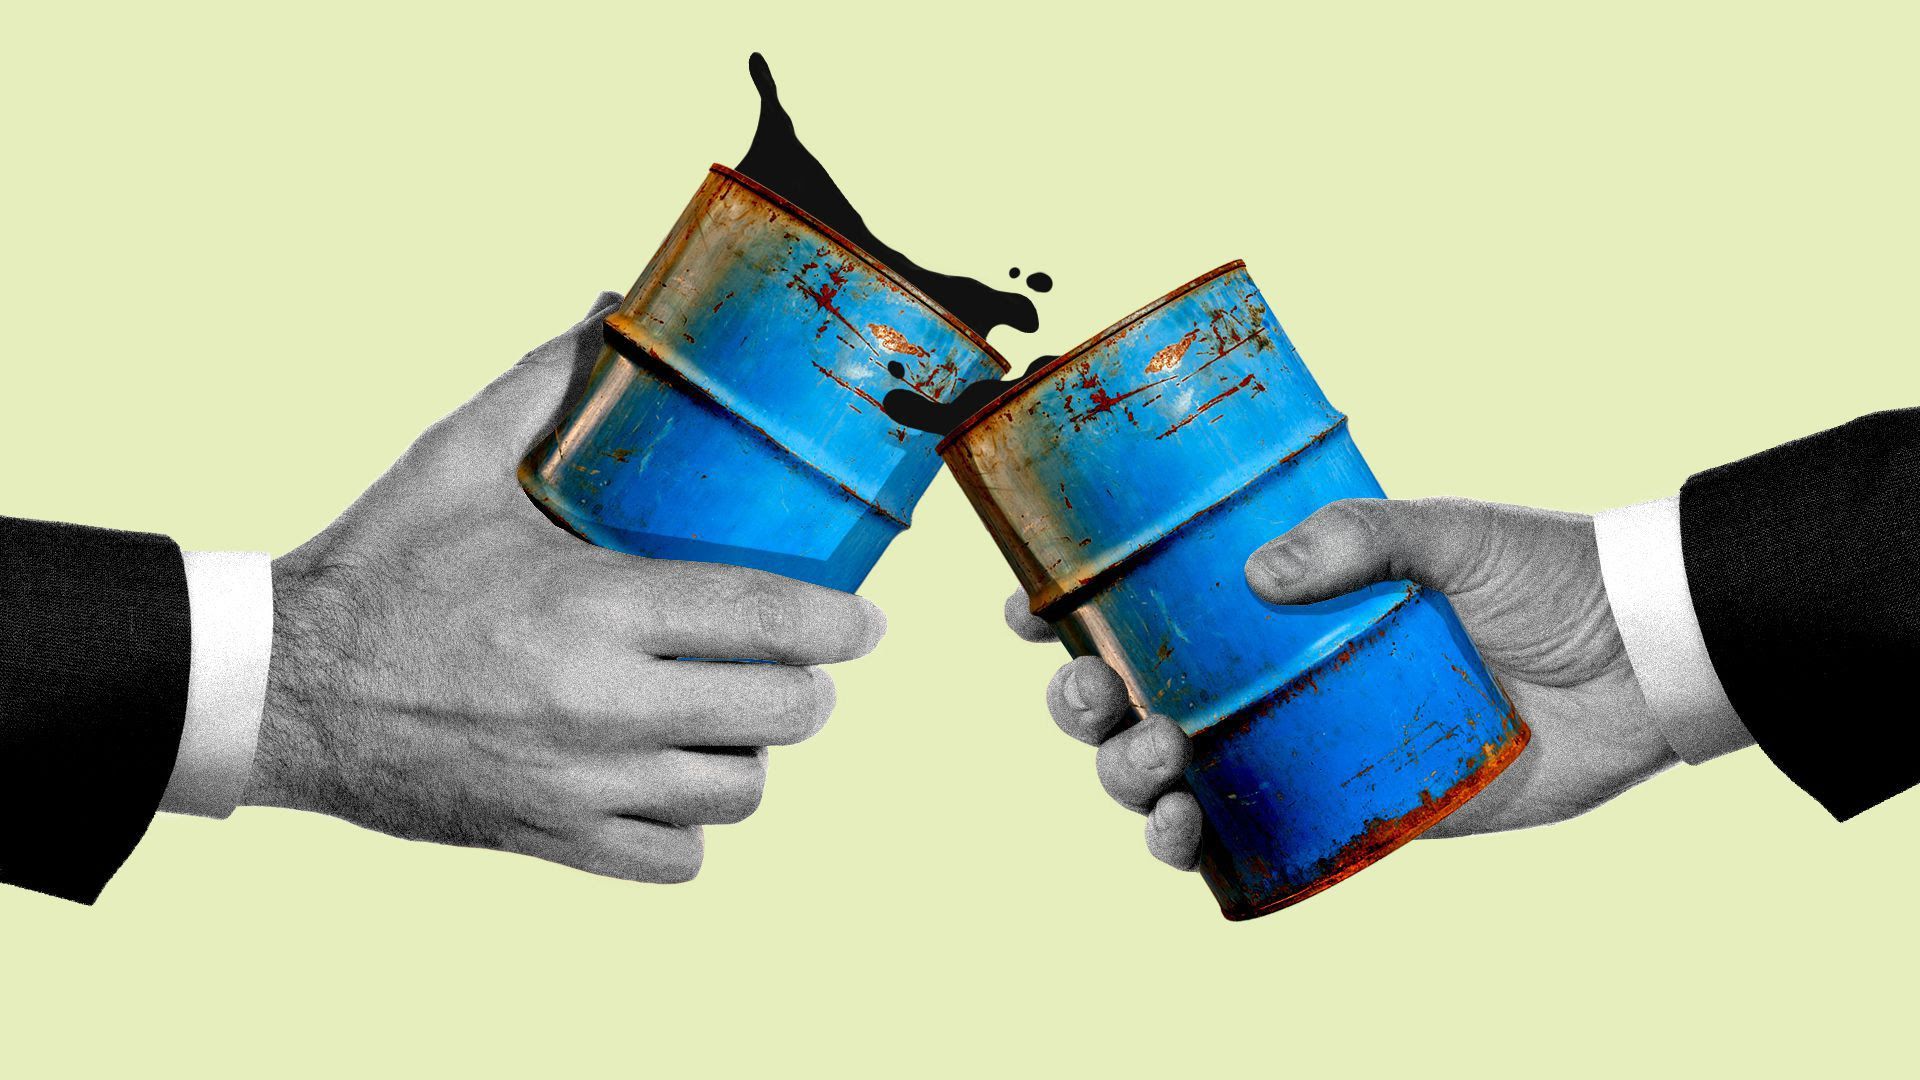 An illustration of hands holding oil barrels.